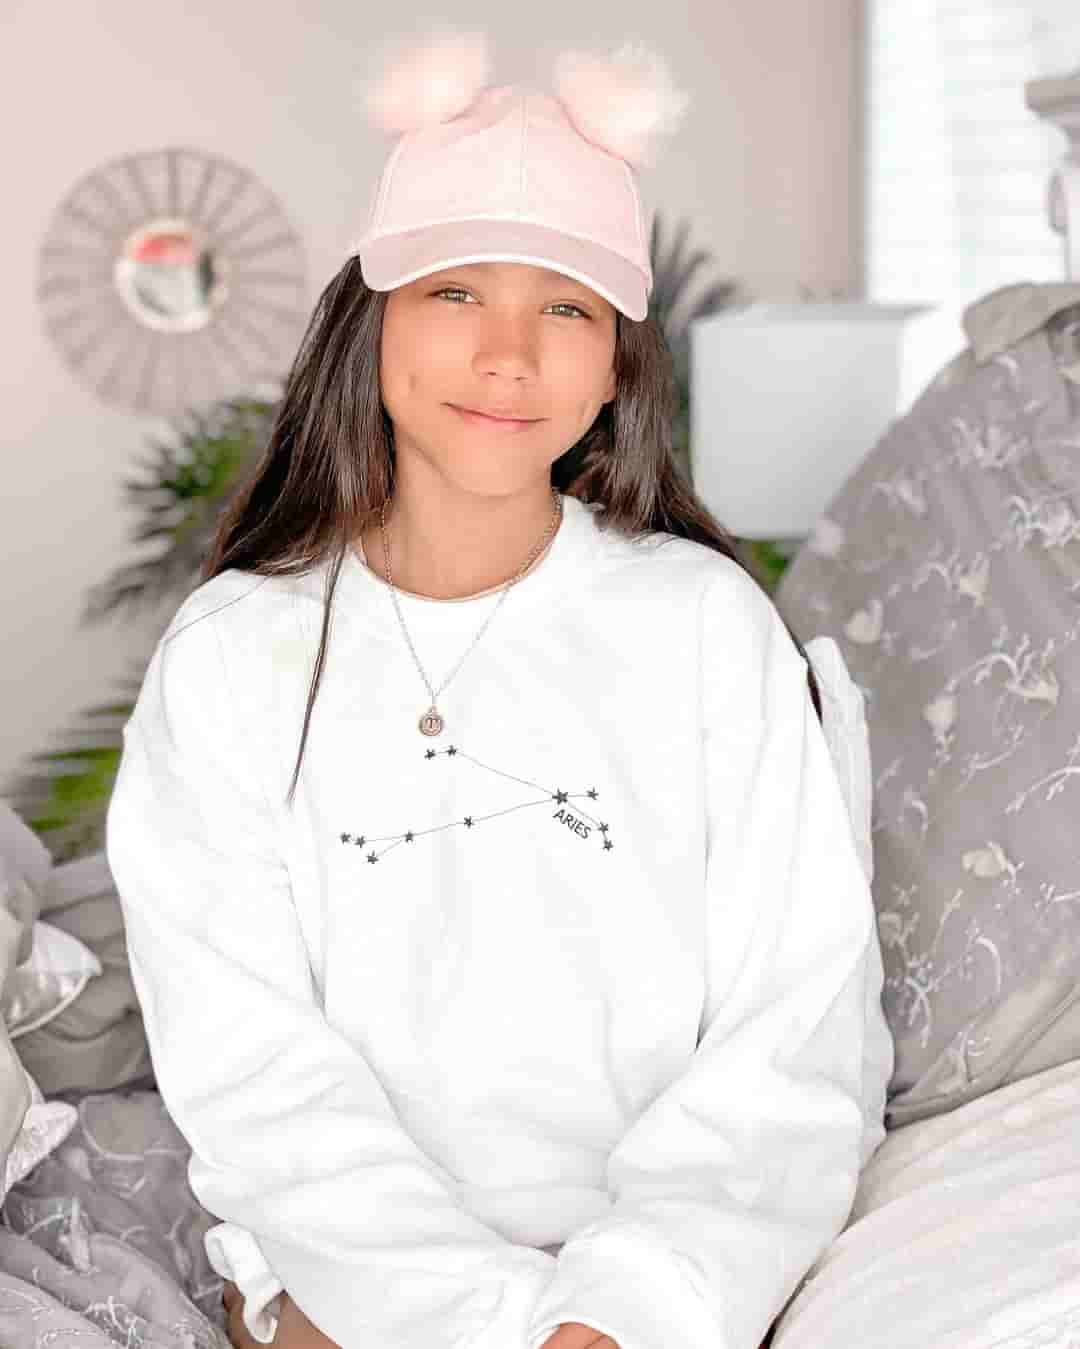  Txunamy Ortiz in her white sweatshirt.